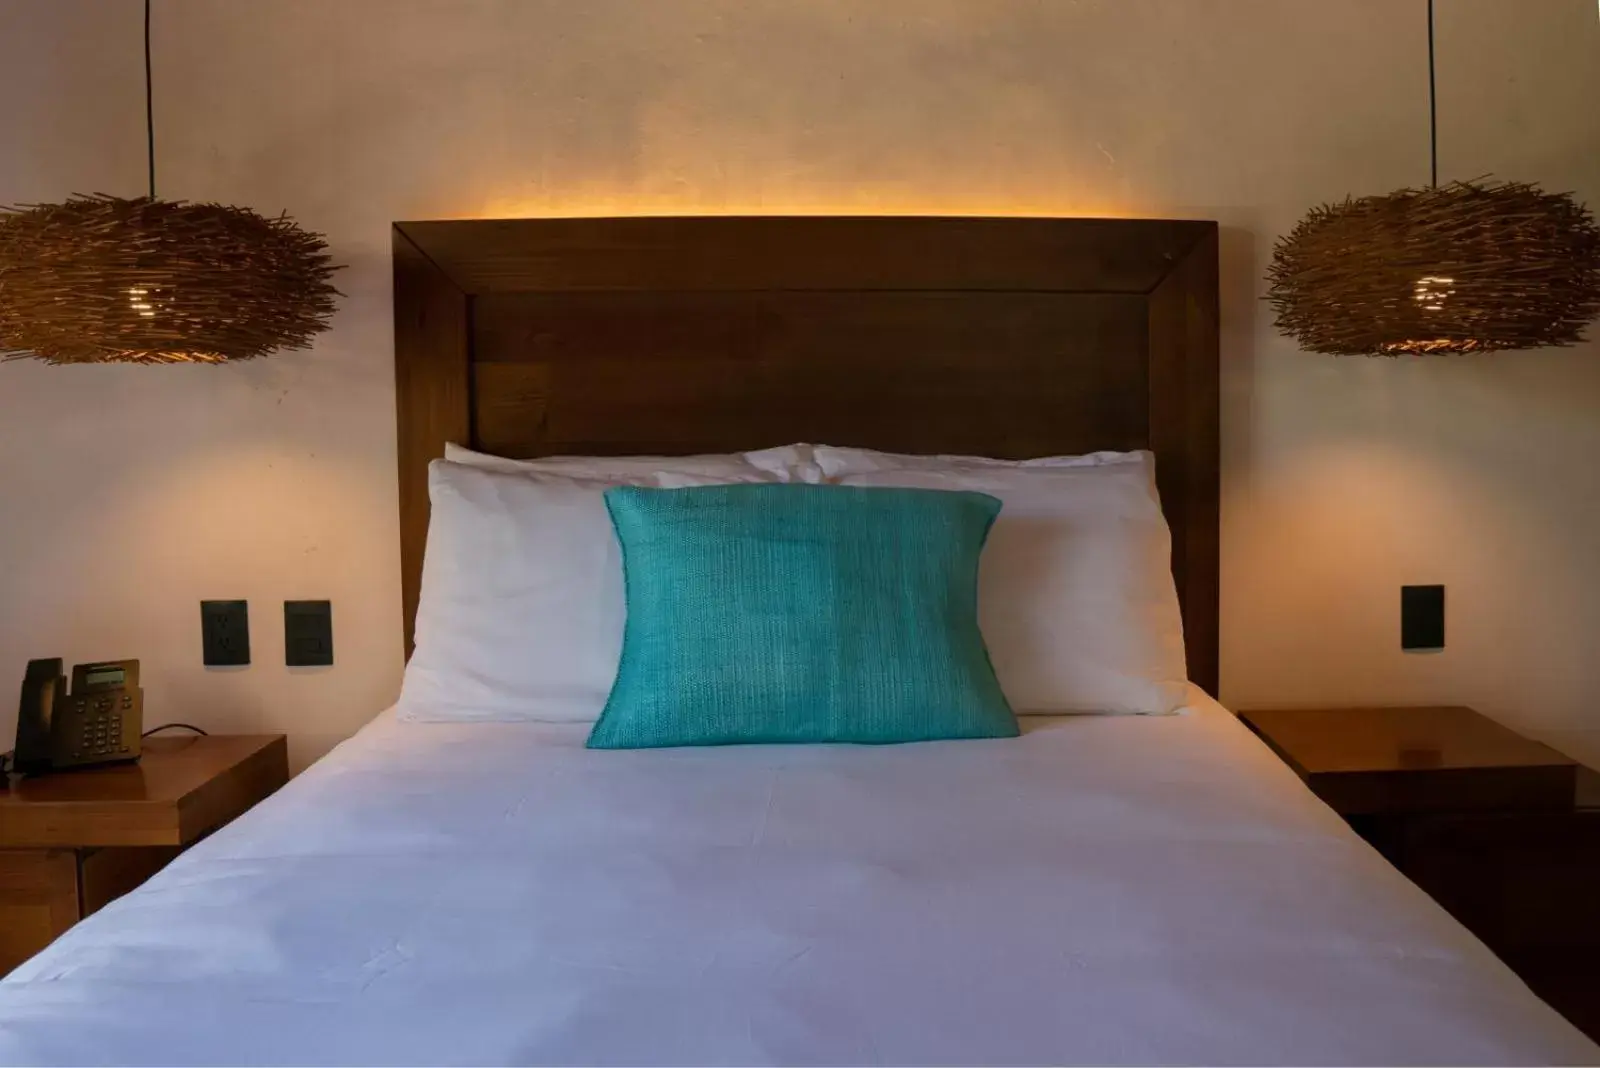 Bedroom, Bed in Puerta del Cielo Hotel Origen